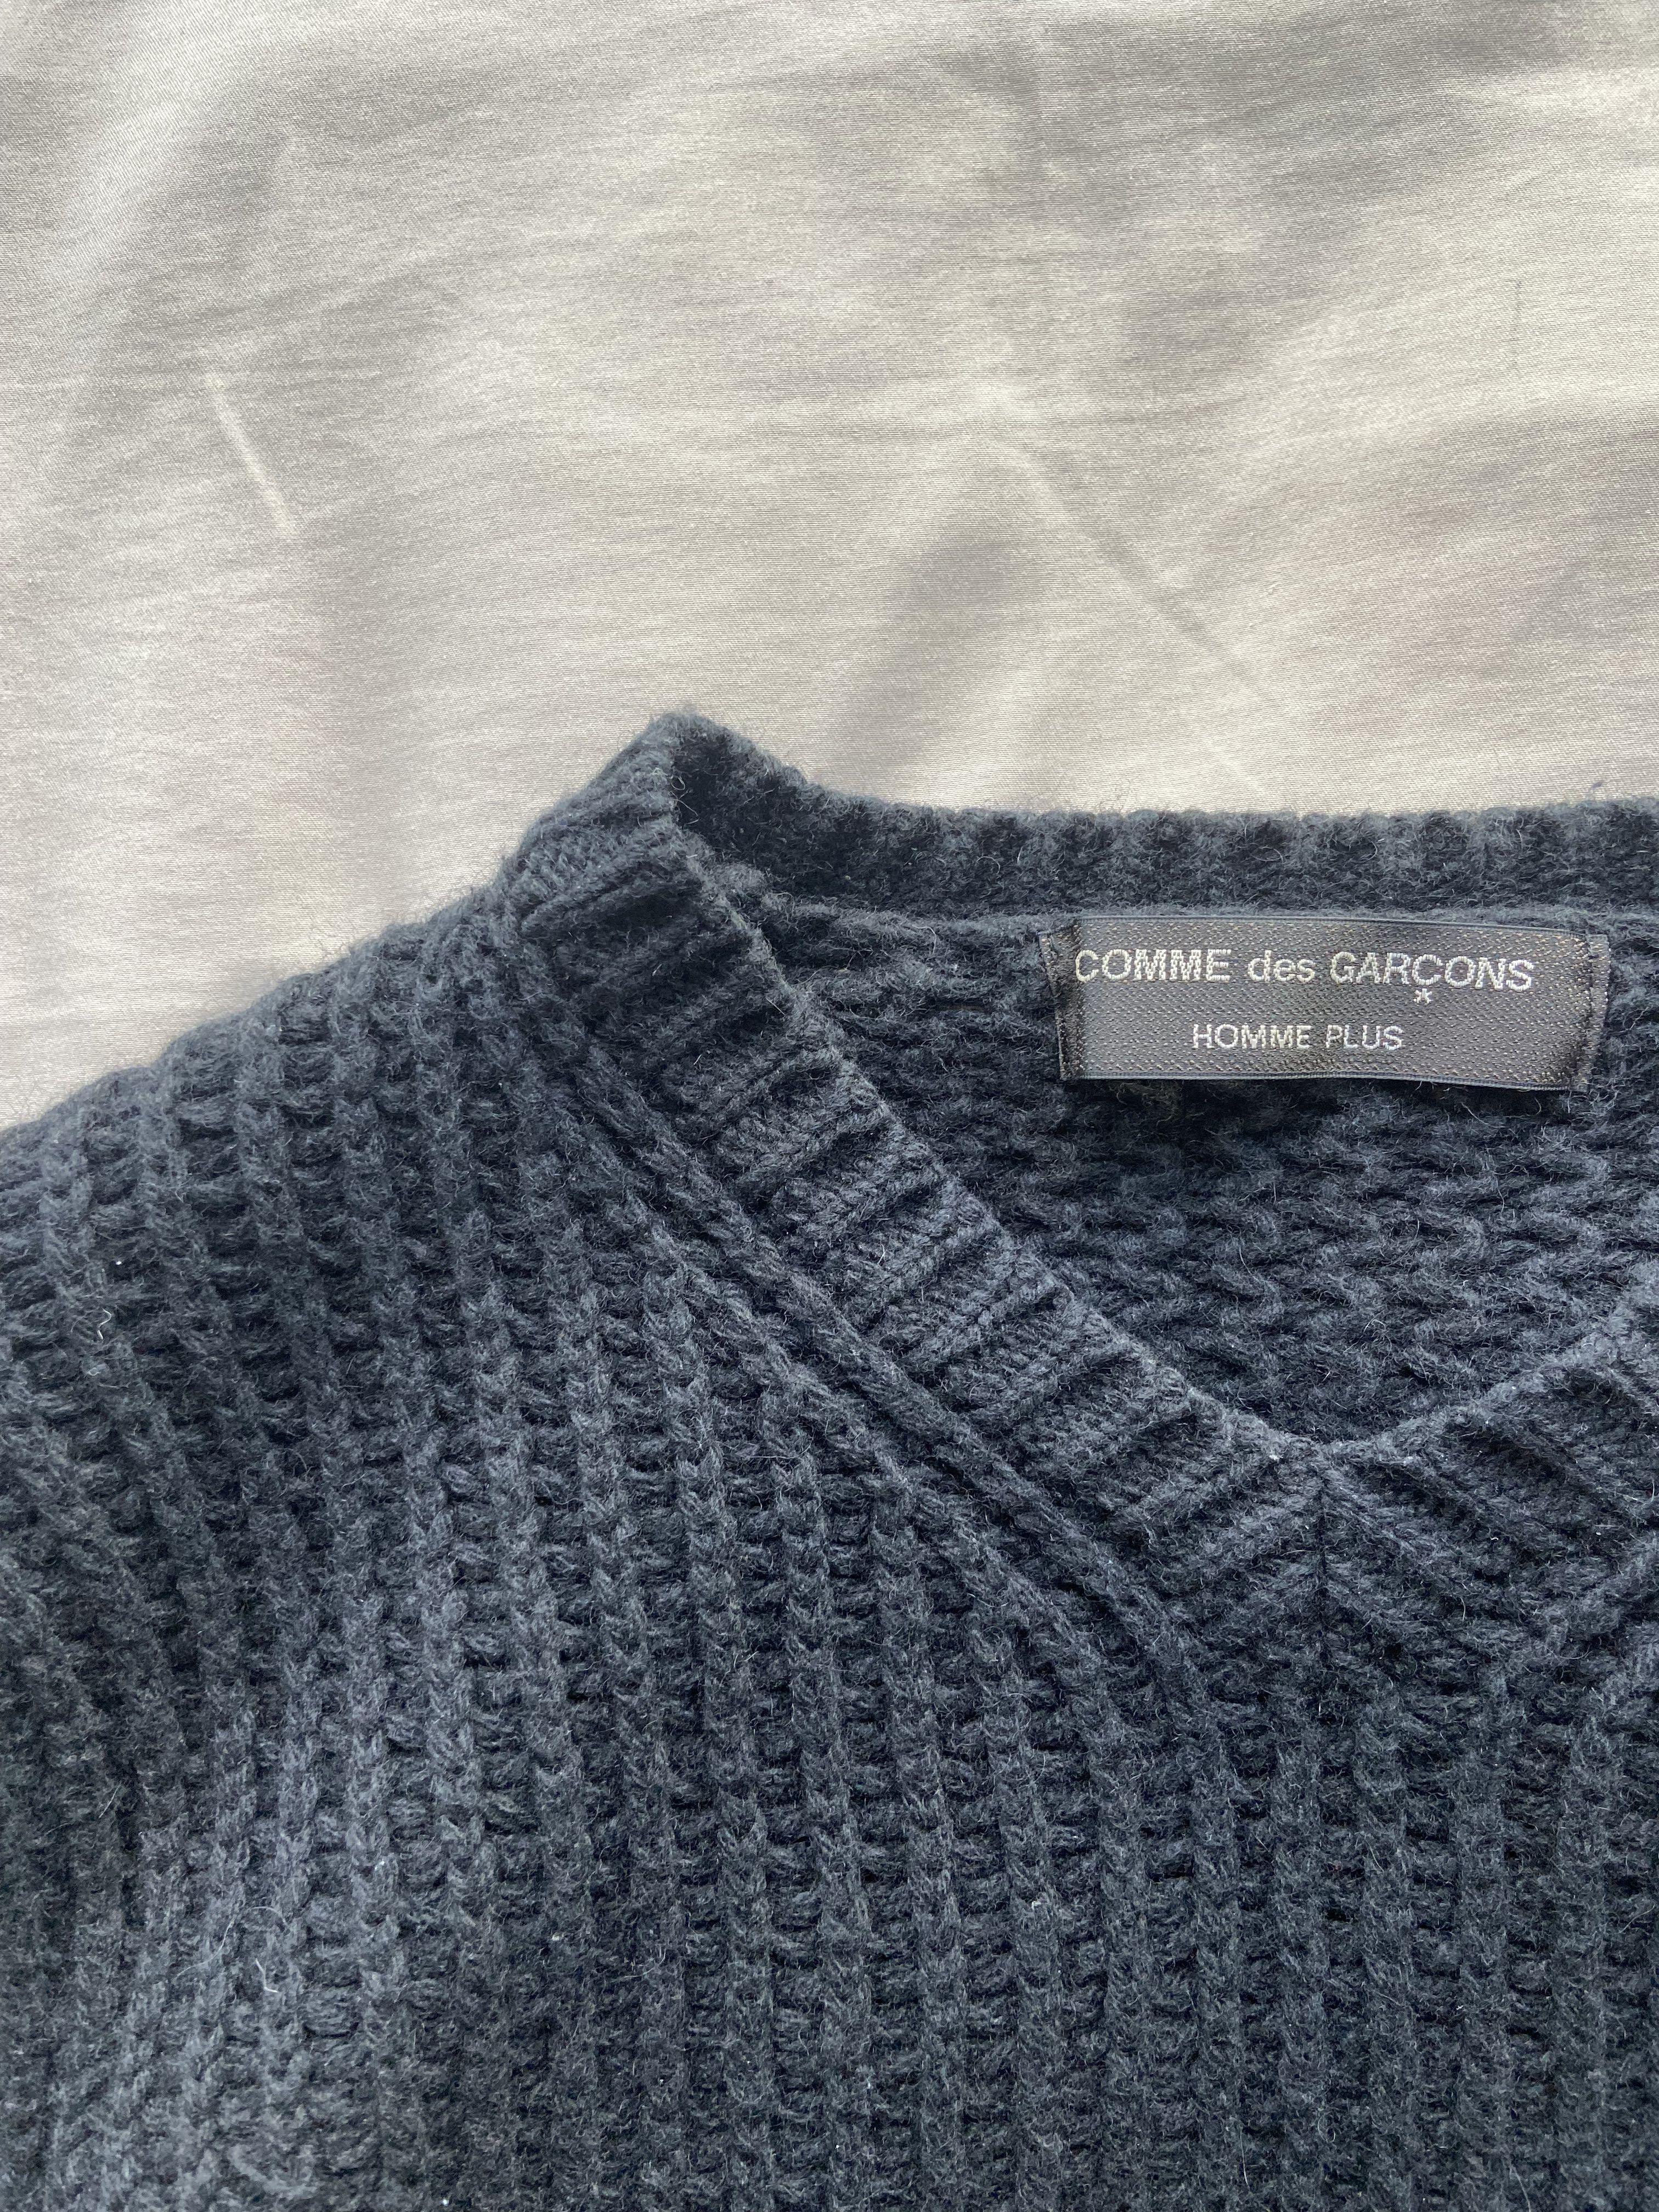 Comme Des Garcons Homme Plus Cable Knit Sweater AD2002, Men's